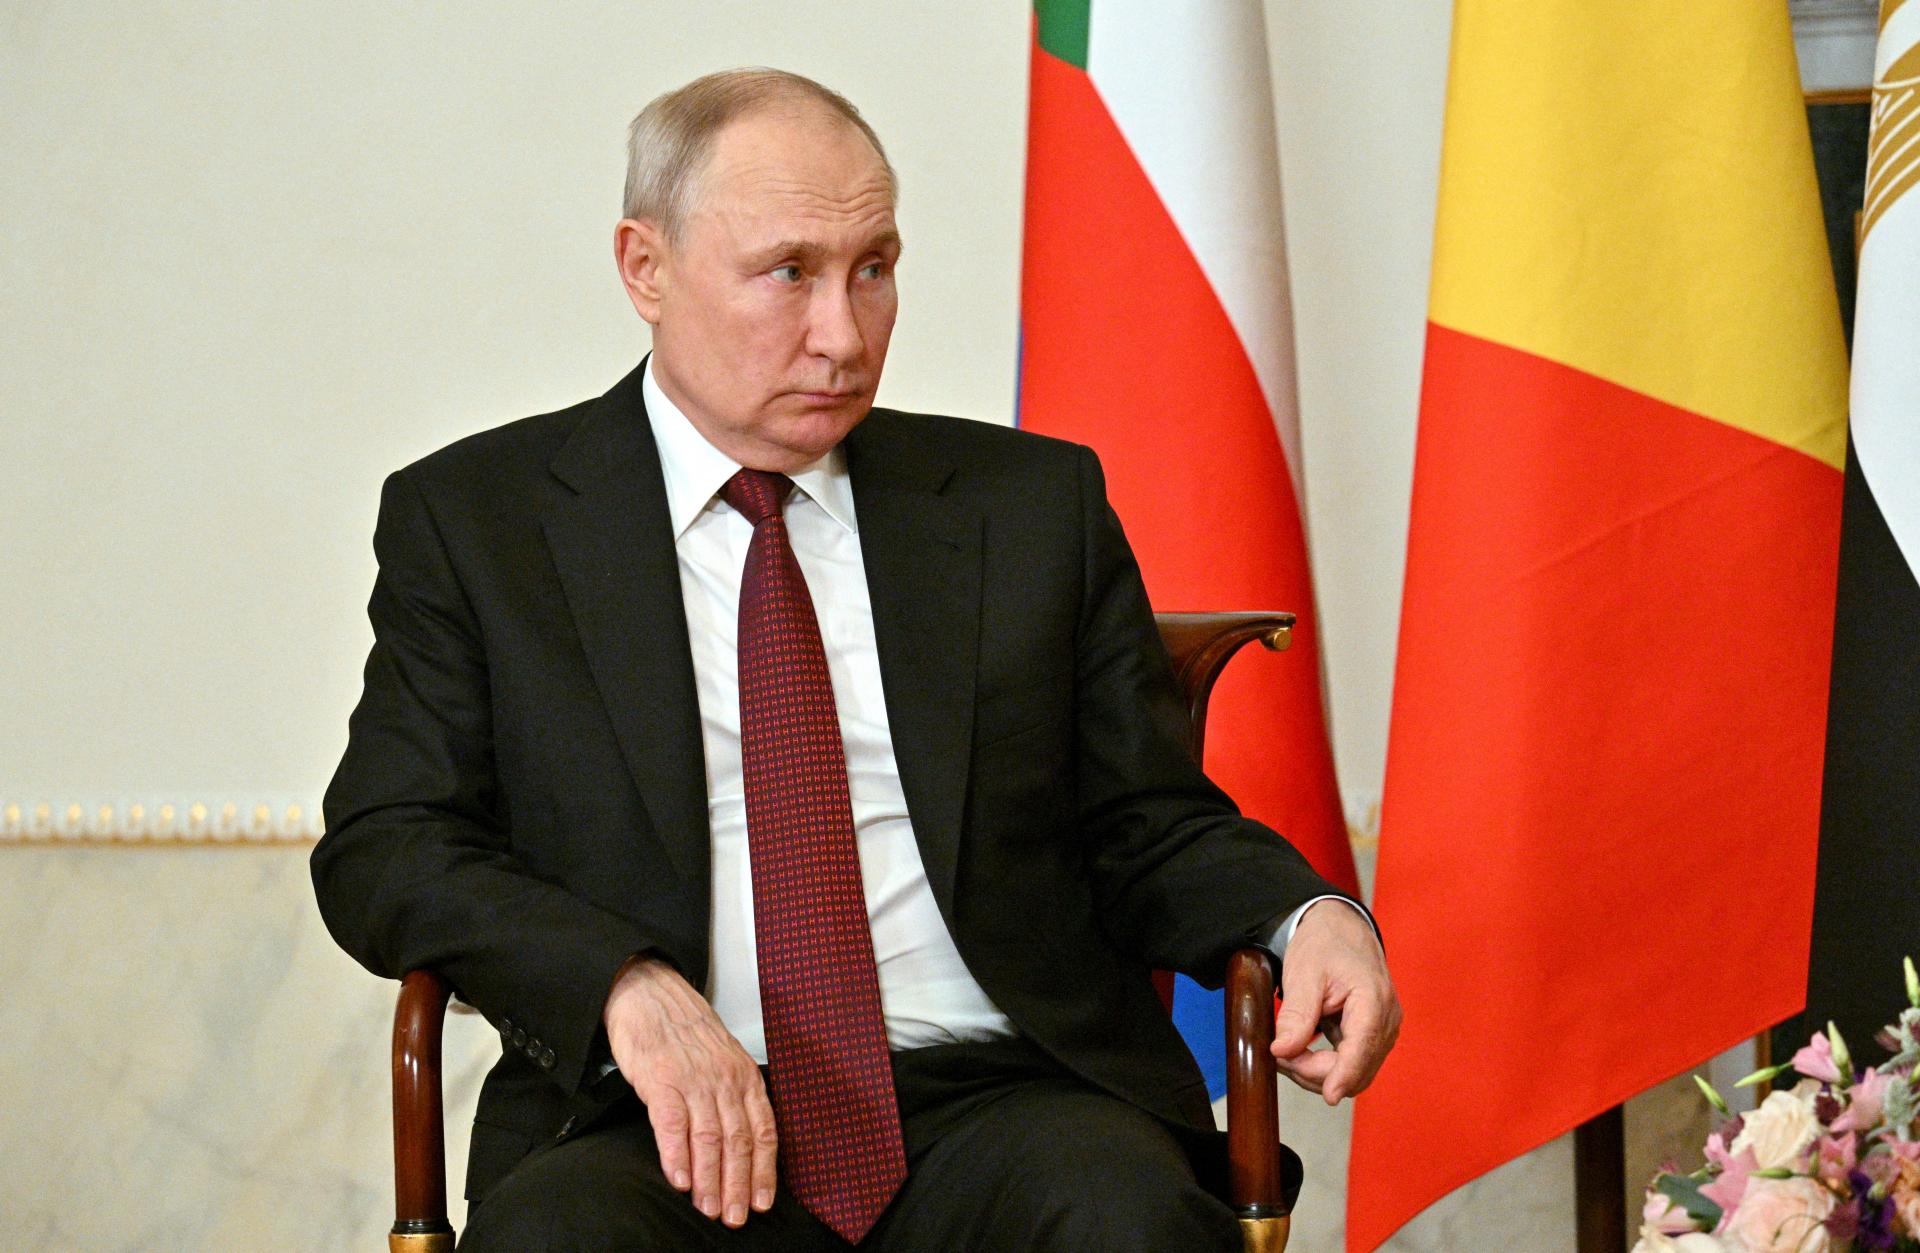 Putinova mierová dohoda s Kyjevom? Dokumentu sa nedá veriť, hovorí expert